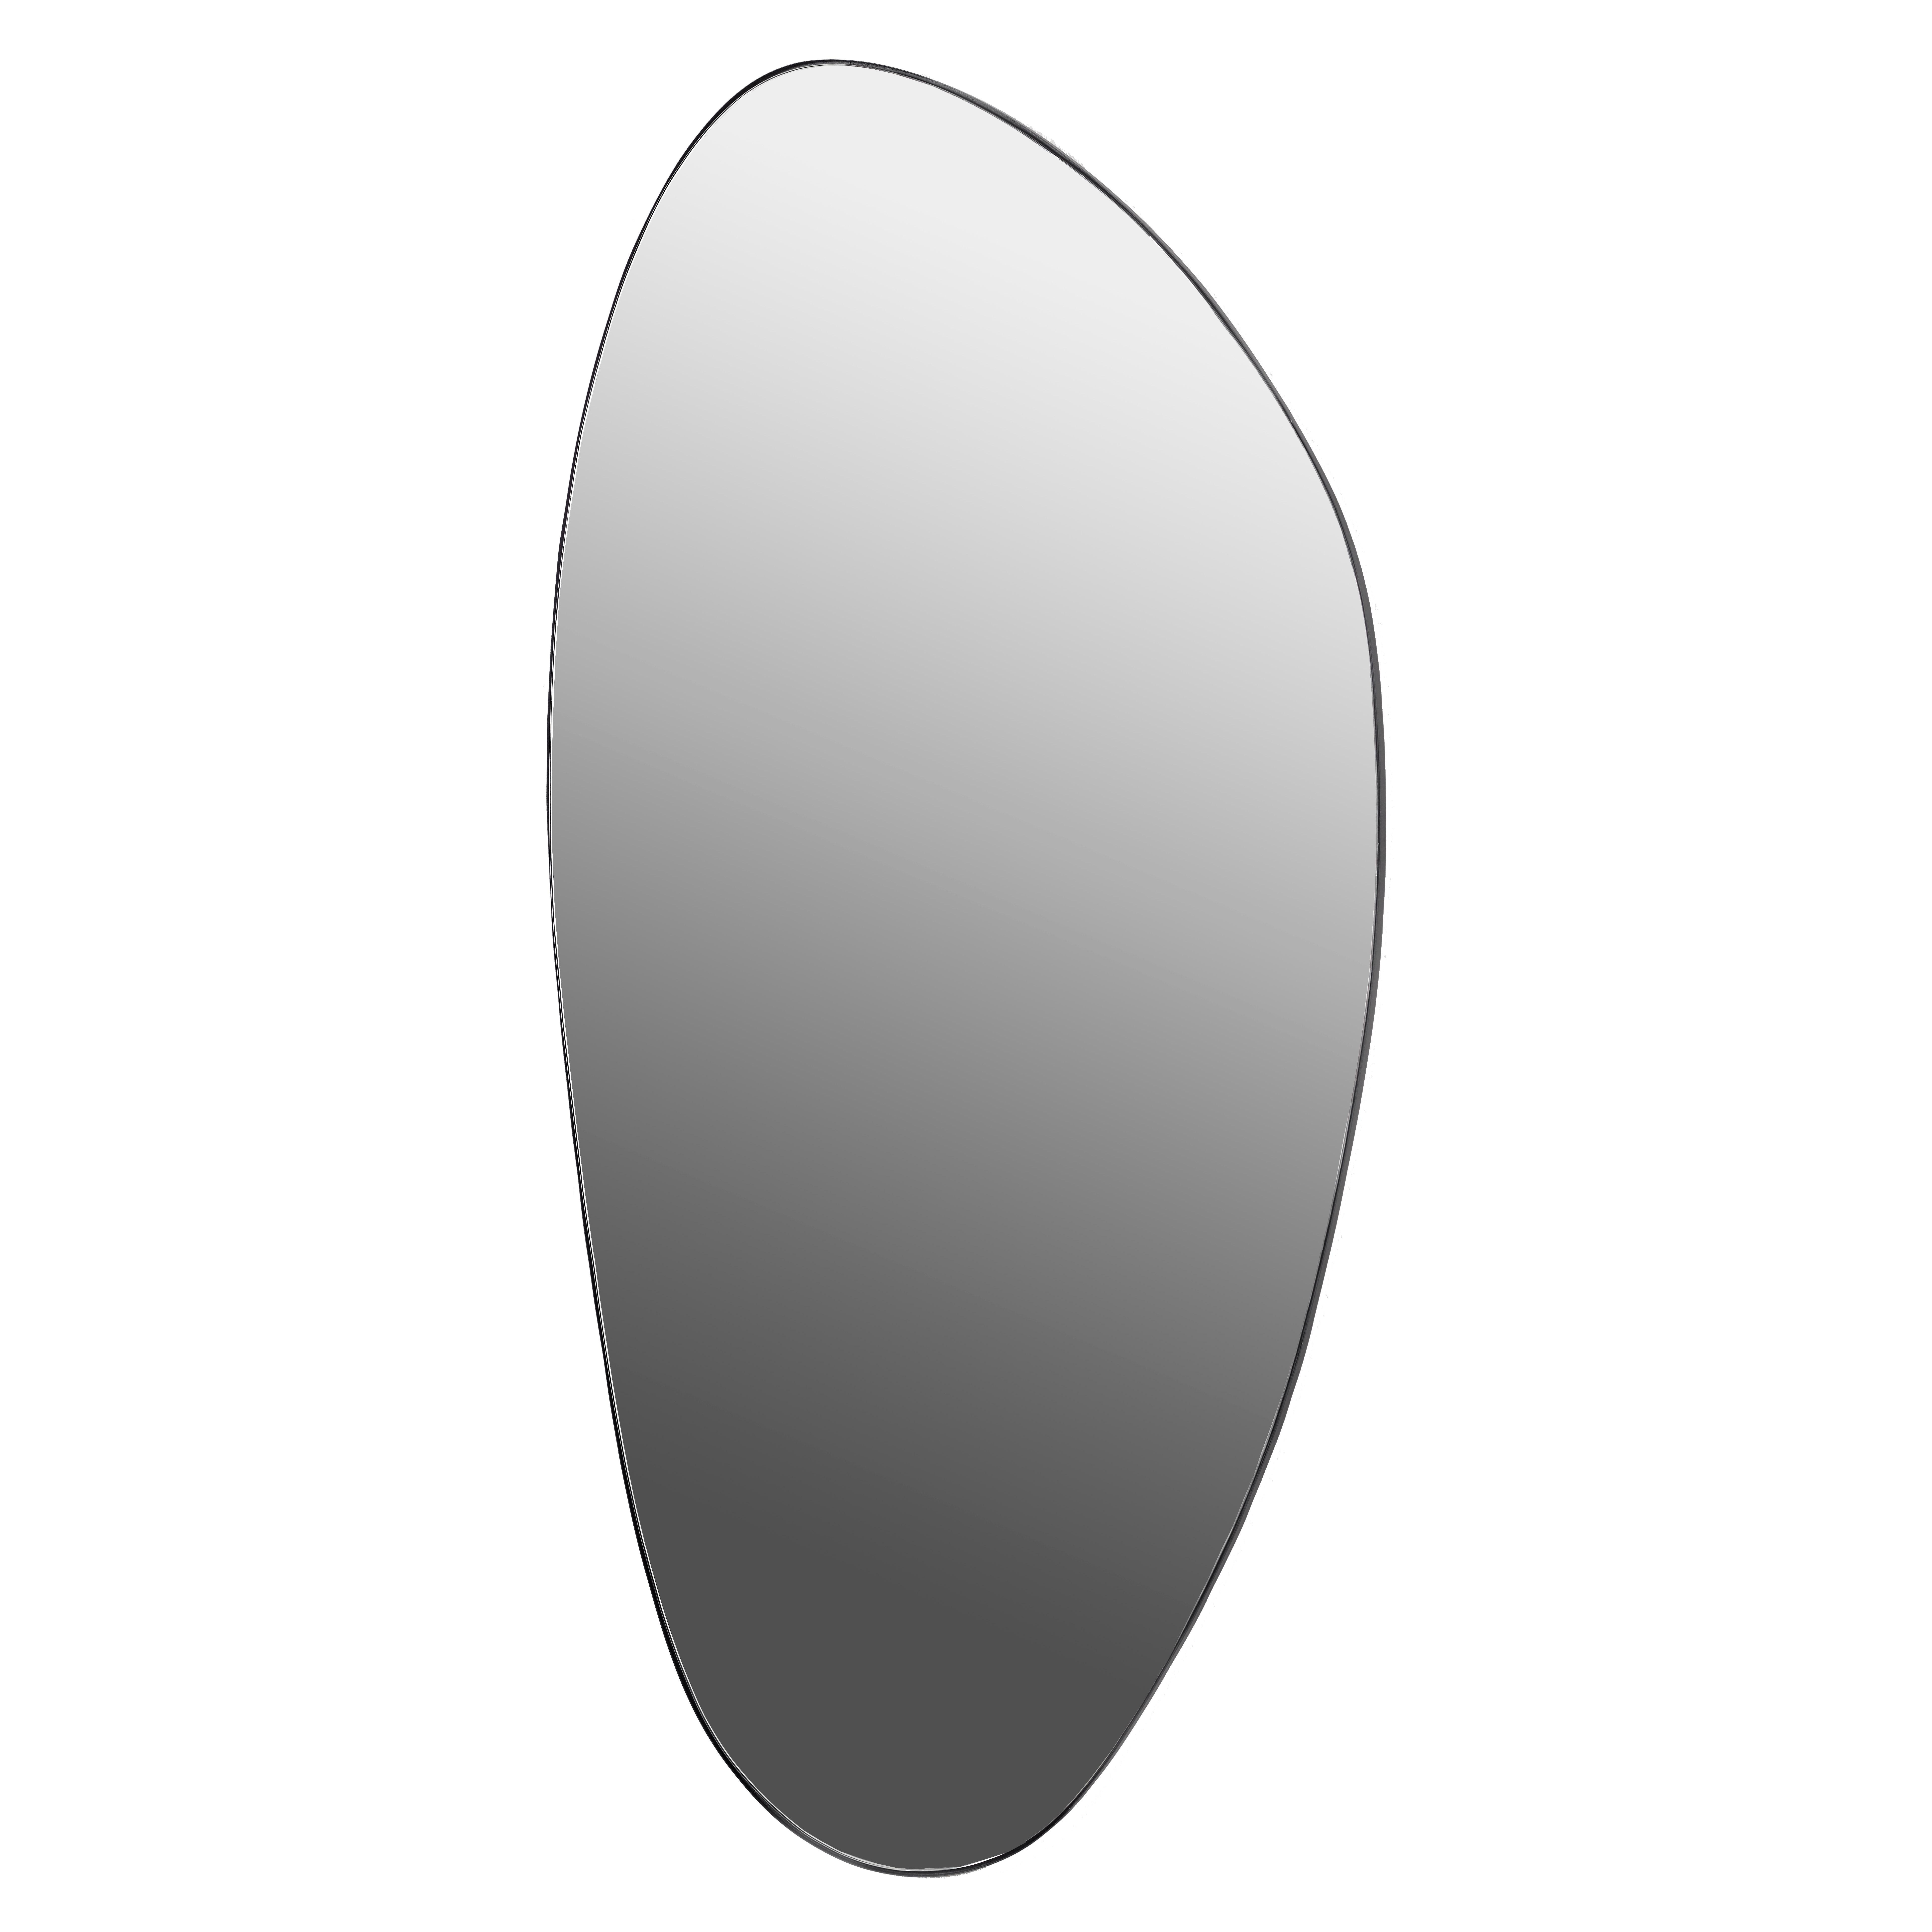 Serax Mirror by Marie Michielssen organische spiegel extra large | Flinders